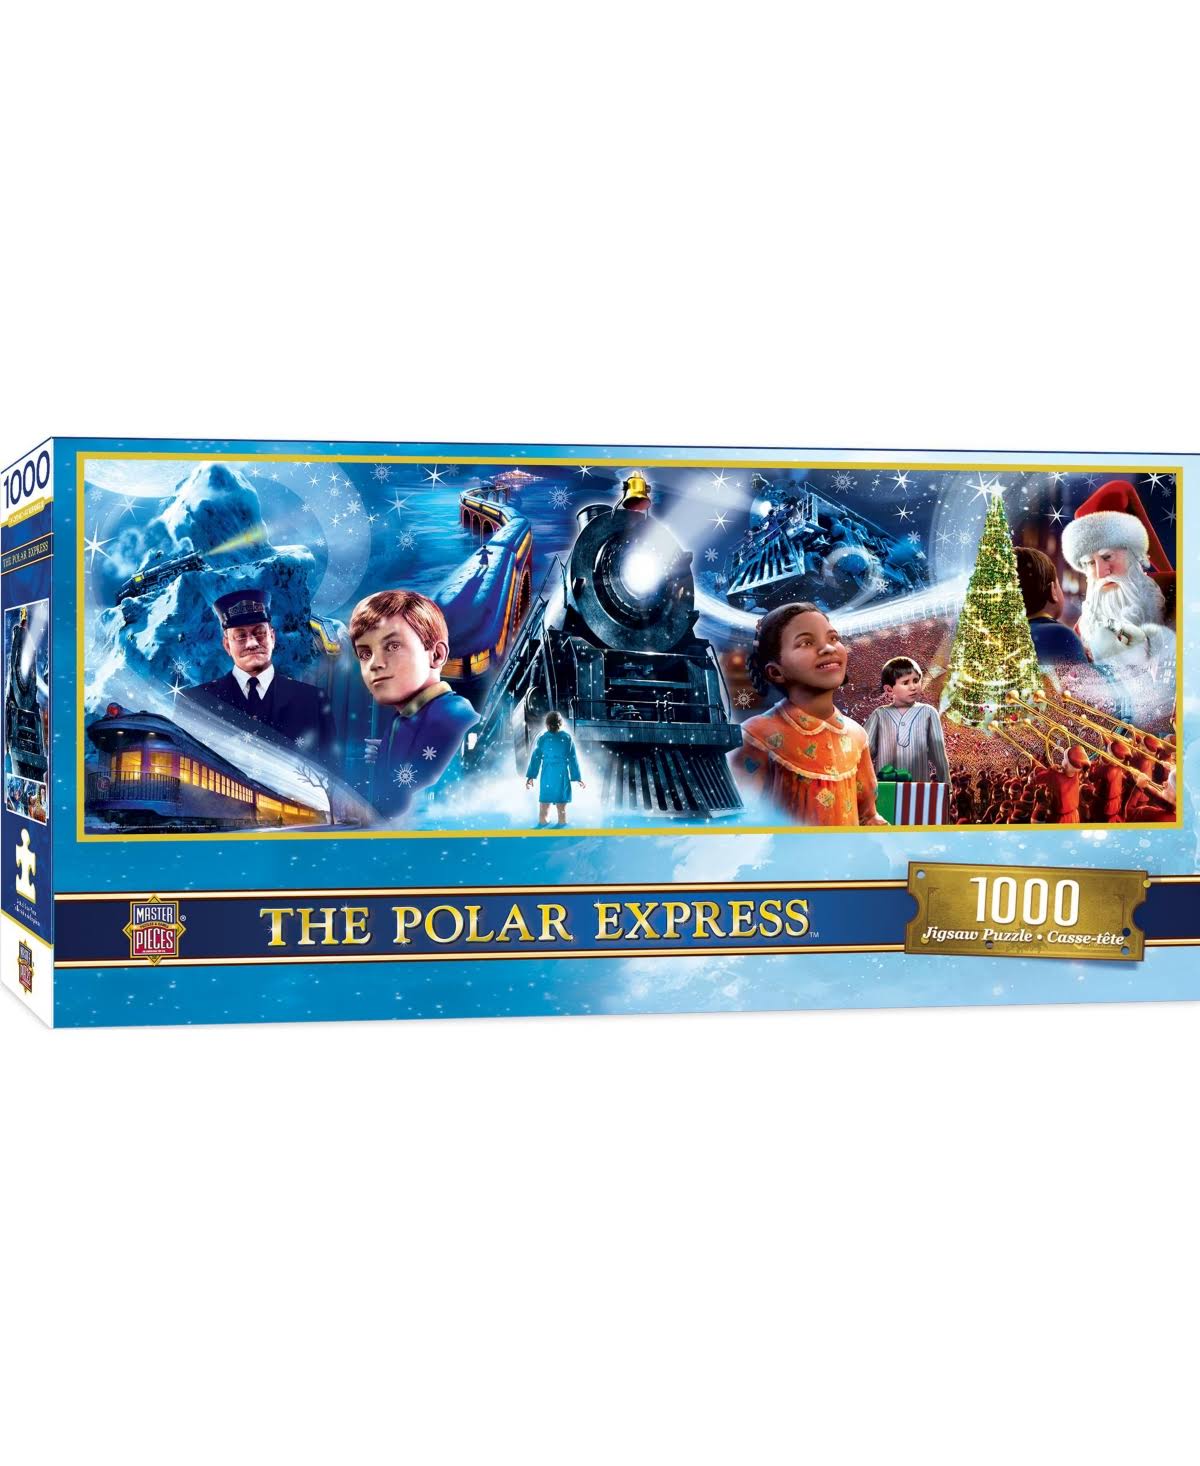 The Polar Express - 1000 Piece Panoramic Puzzle